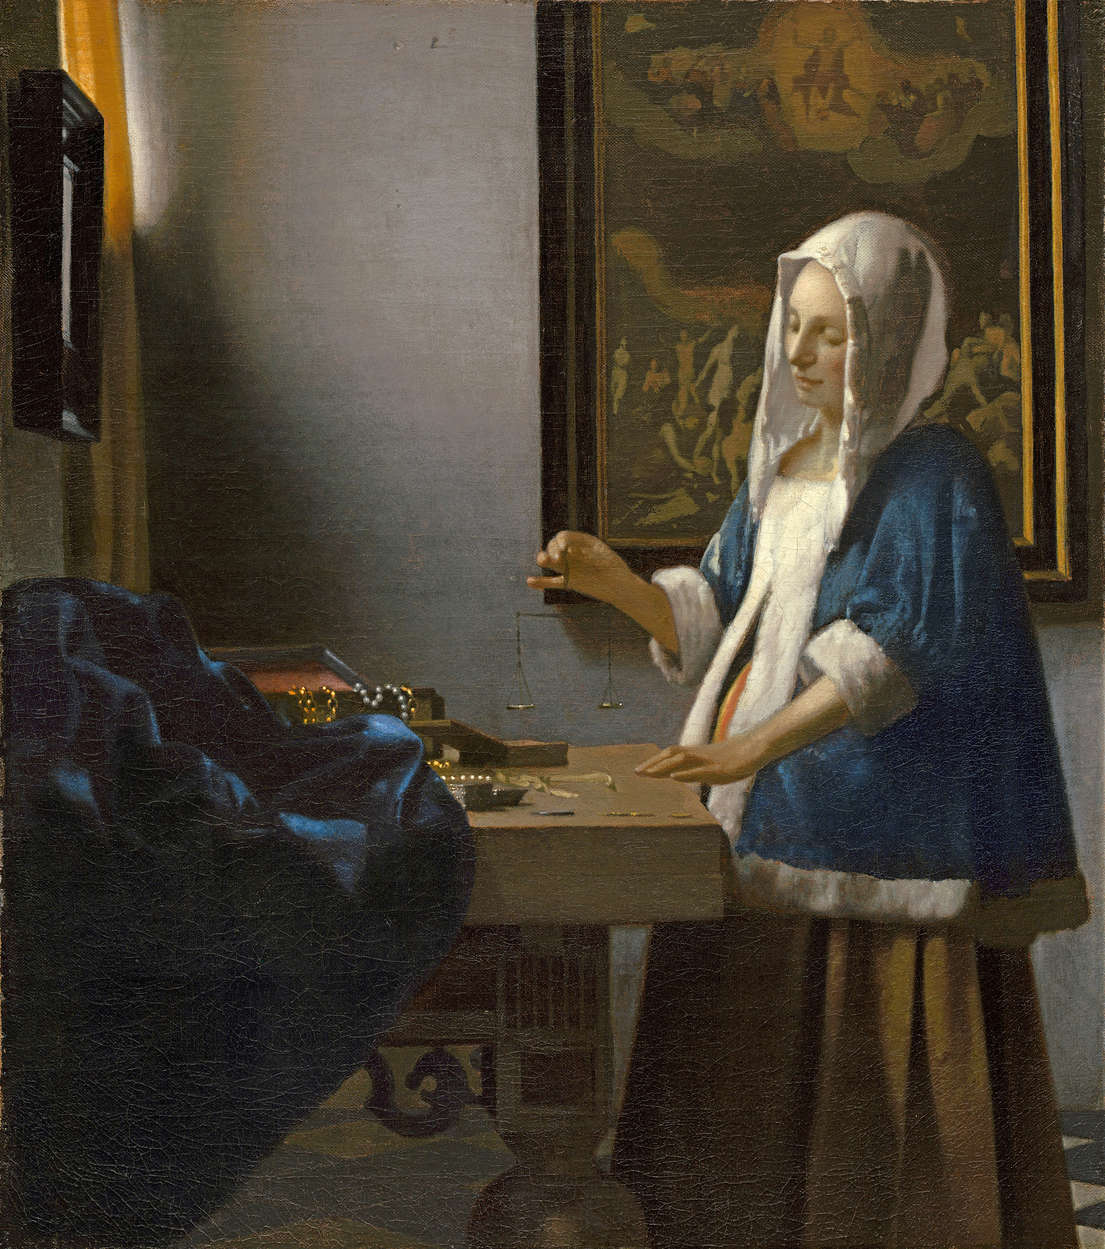             Fototapete "Frau mit Waage" von Jan Vermeer
        